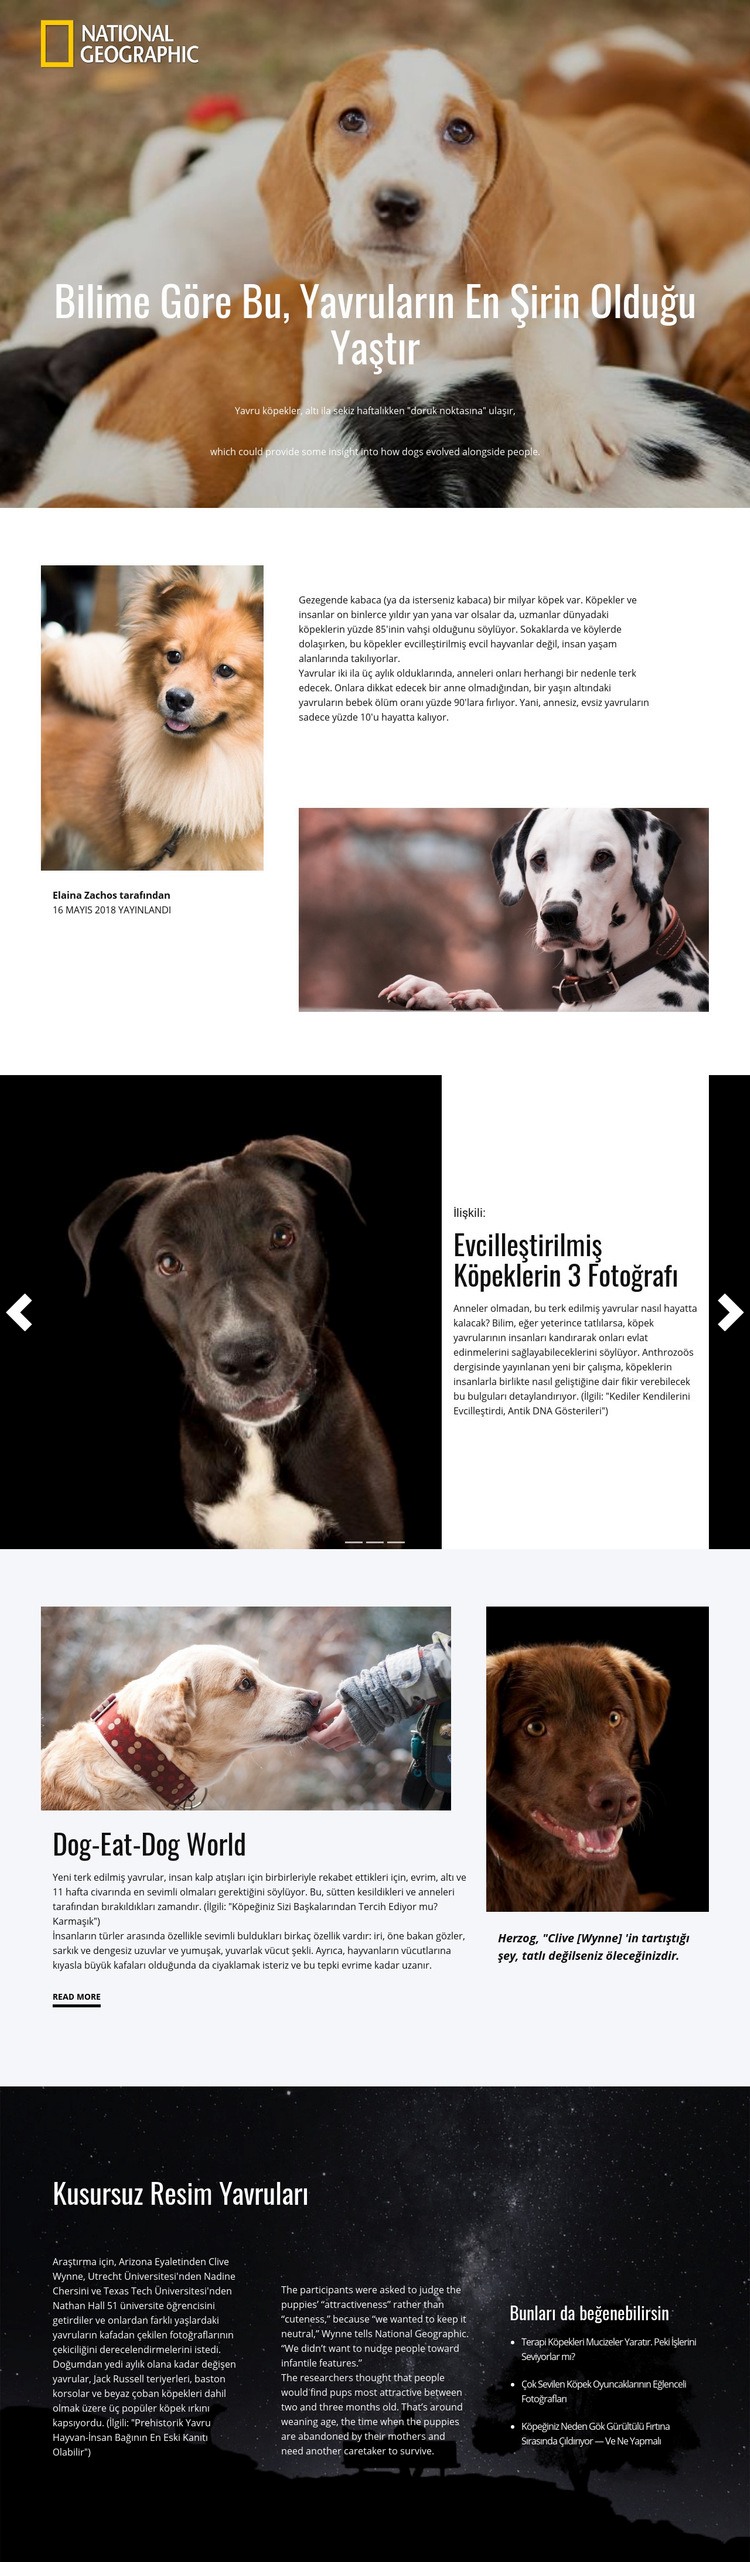 En şirin evcil hayvanlar Web sitesi tasarımı